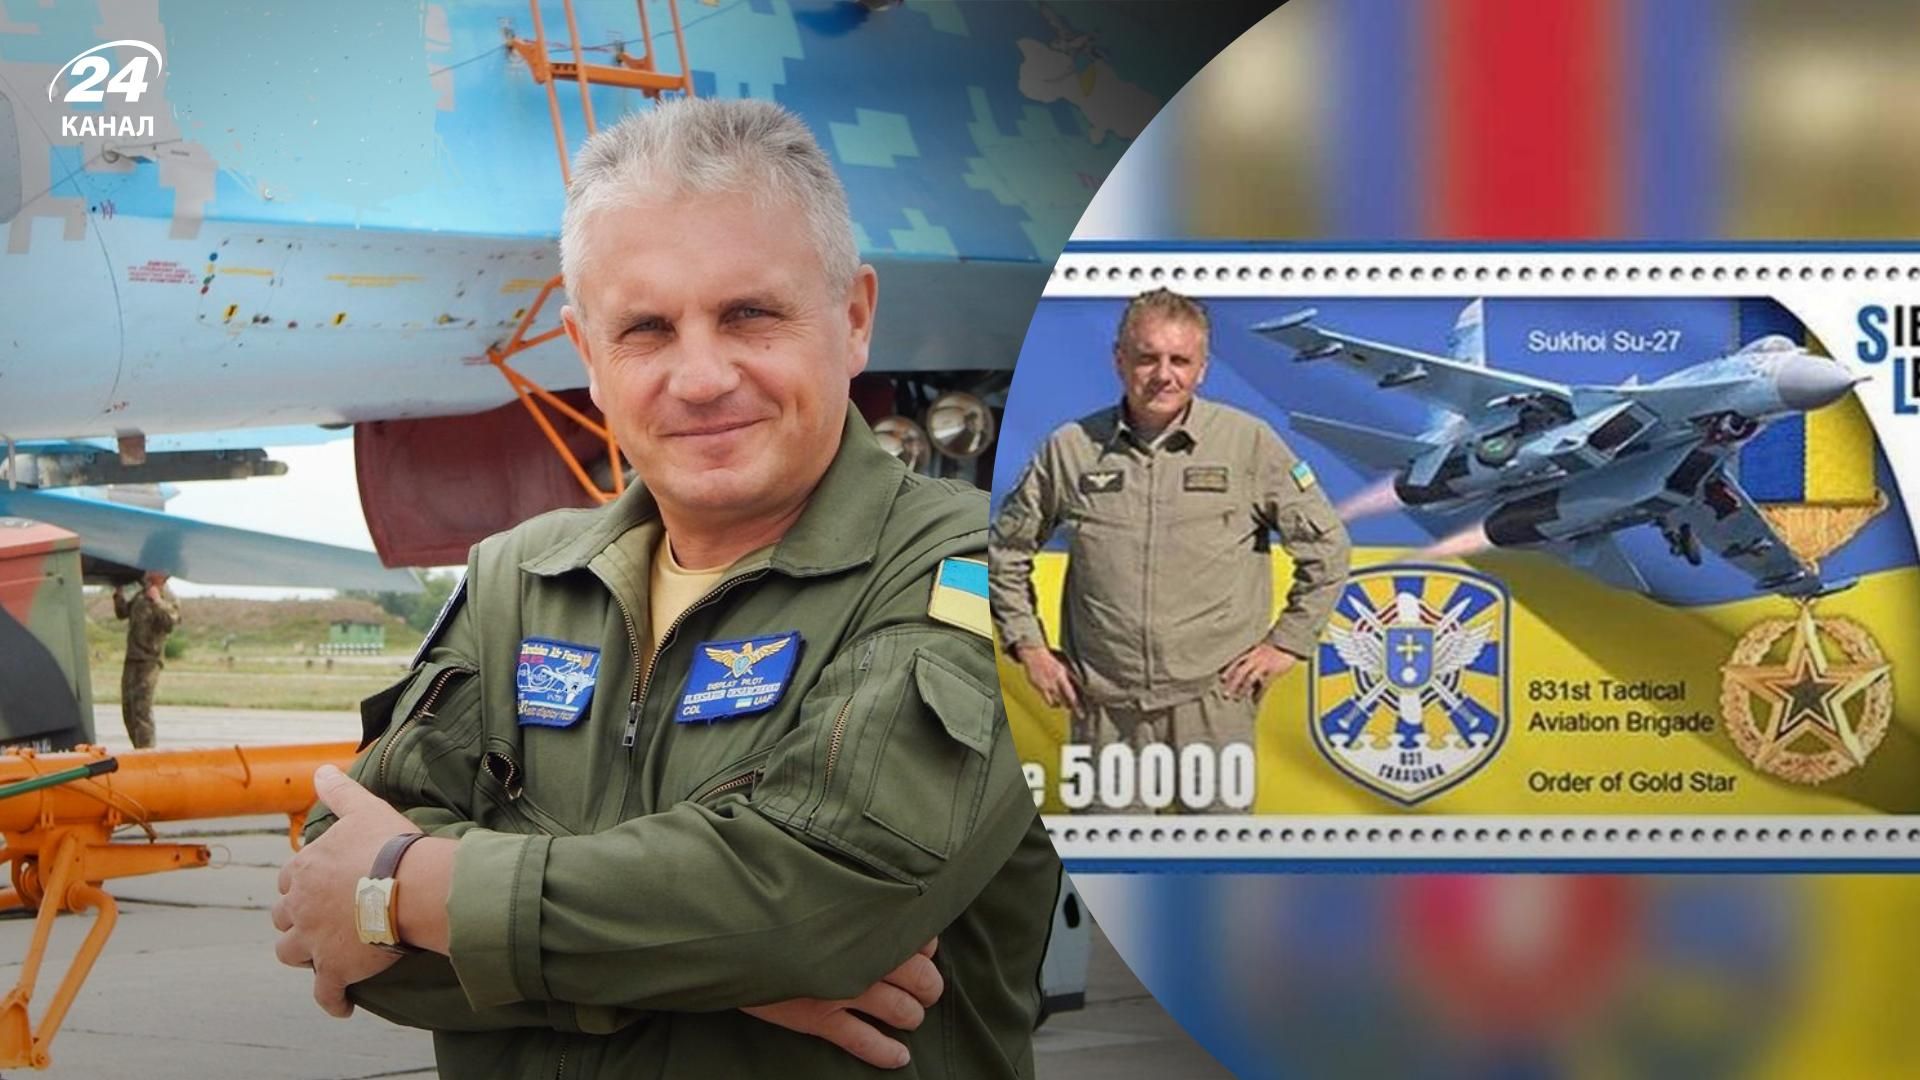 Пилоту Александру Оксанченко посвятили серию марок в Сьерра-Леоне